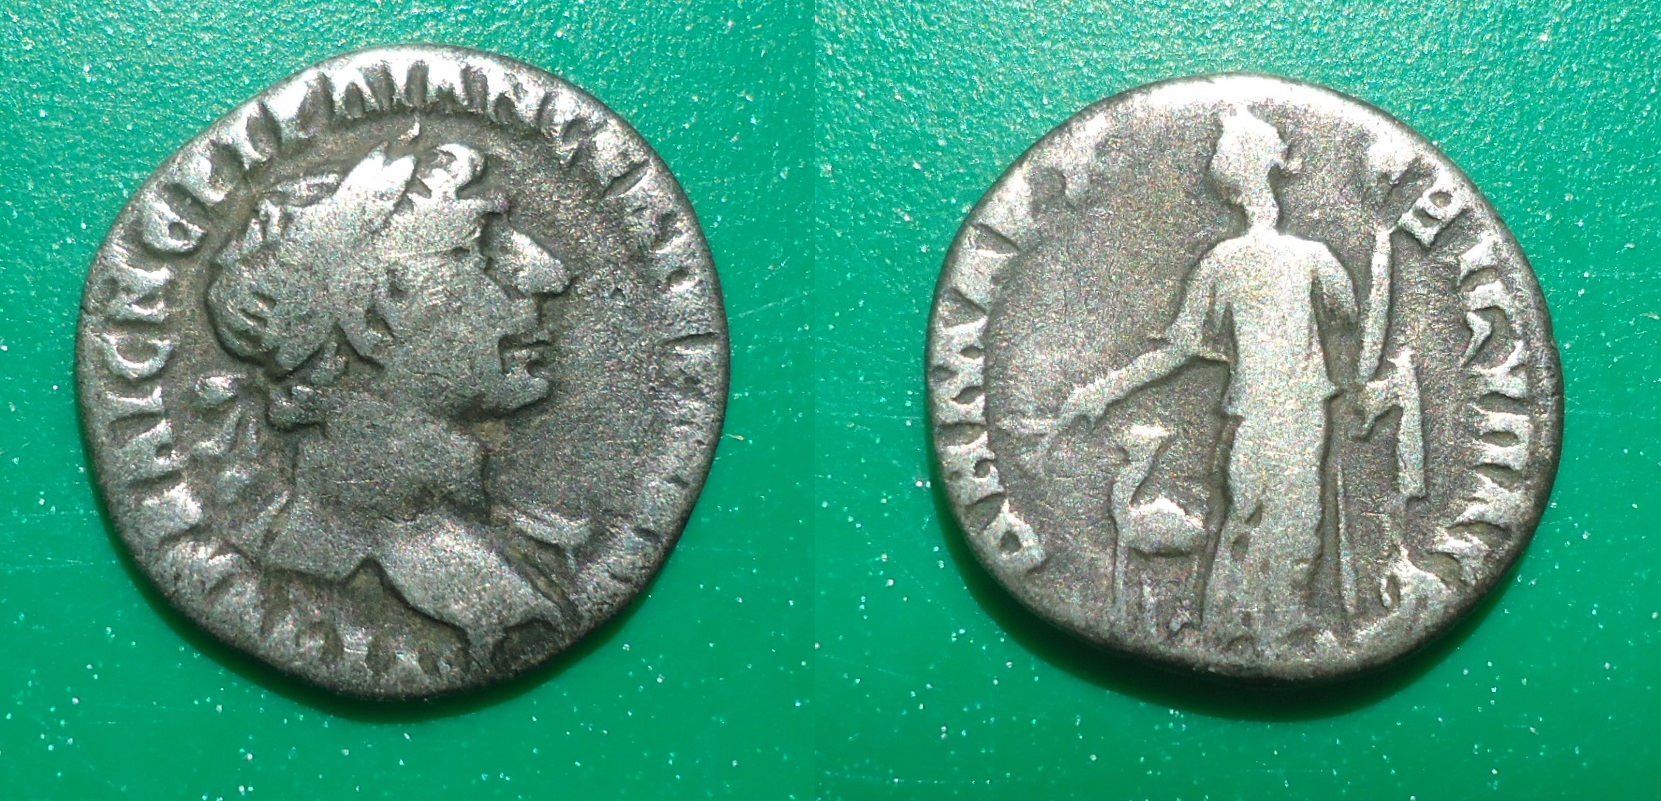 Trajan Arabia and Camel Denarius -- OPTIMO PRINCI?? | Coin Talk